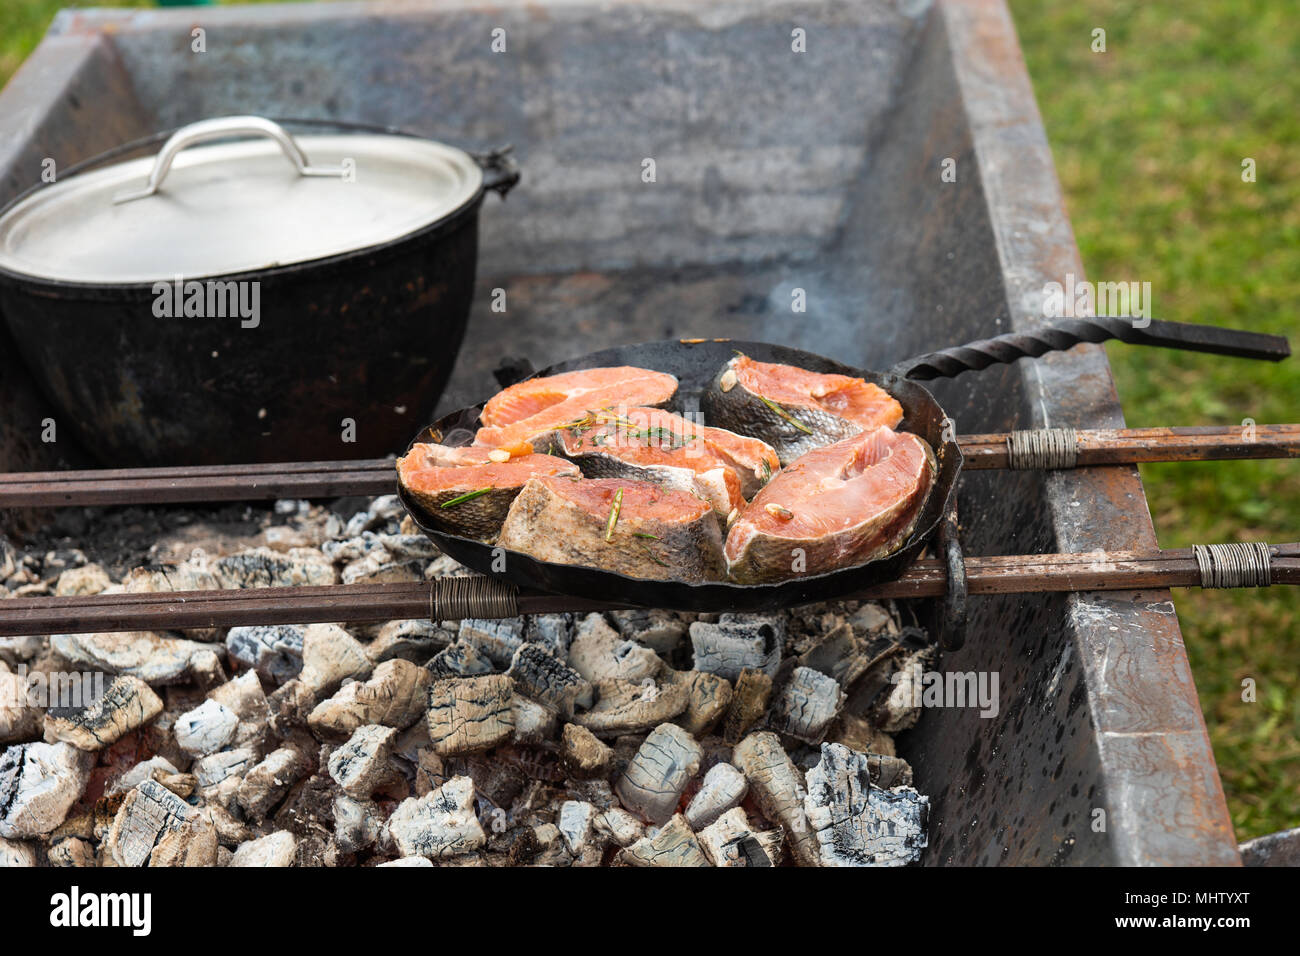 Stücke der roten Lachs Fisch Grill auf einer Pfanne, die auf Metall Stangen  über dem offenen Feuer Holzkohle Ofen steht. Zubereitung von Speisen in  einem mittelalterlichen Küche Stockfotografie - Alamy